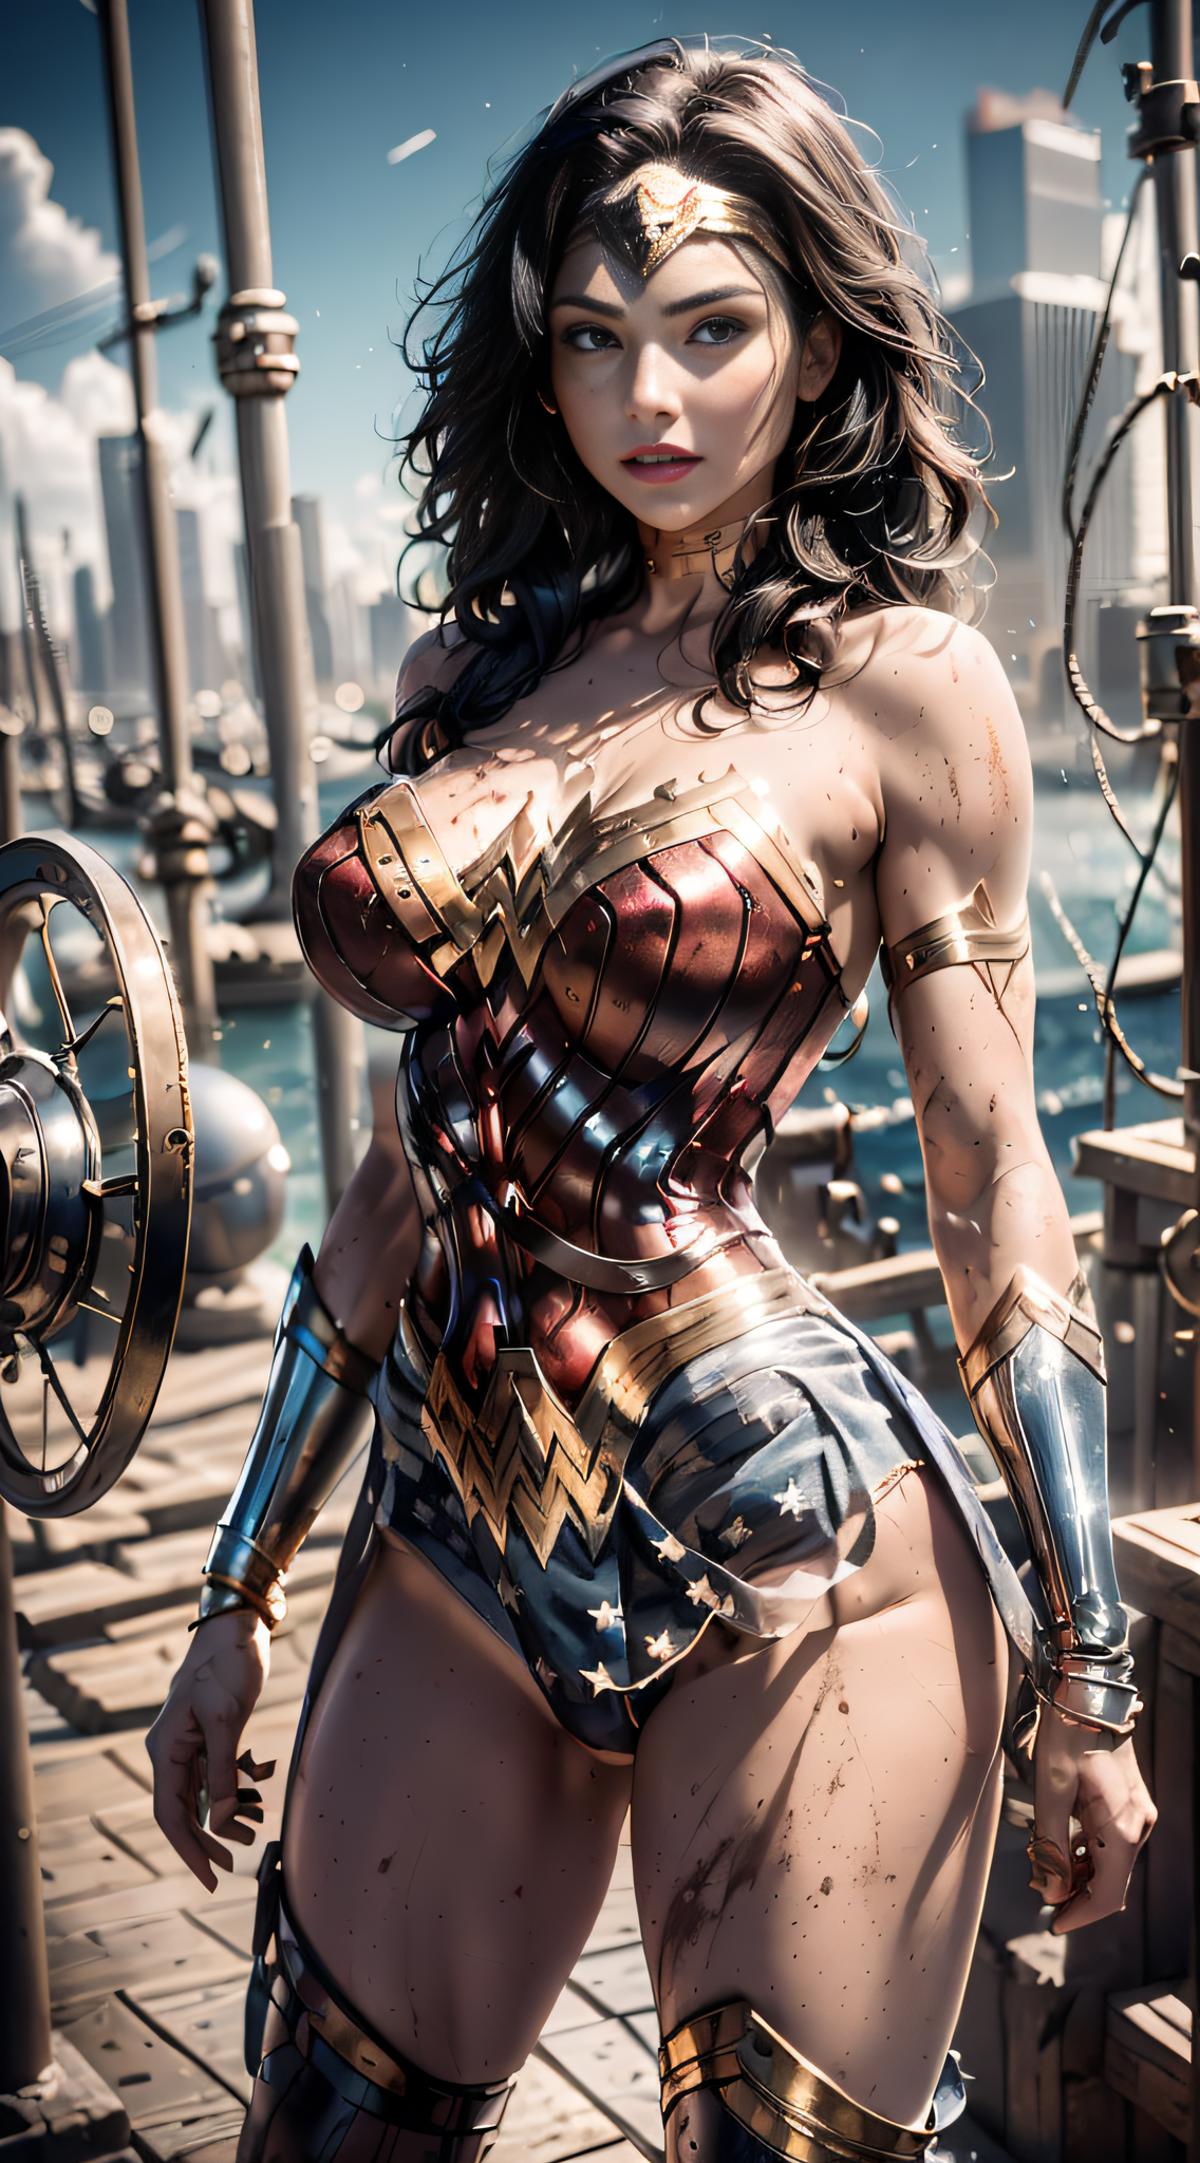 Wonder_Woman_Character_Classic image by Potatorule